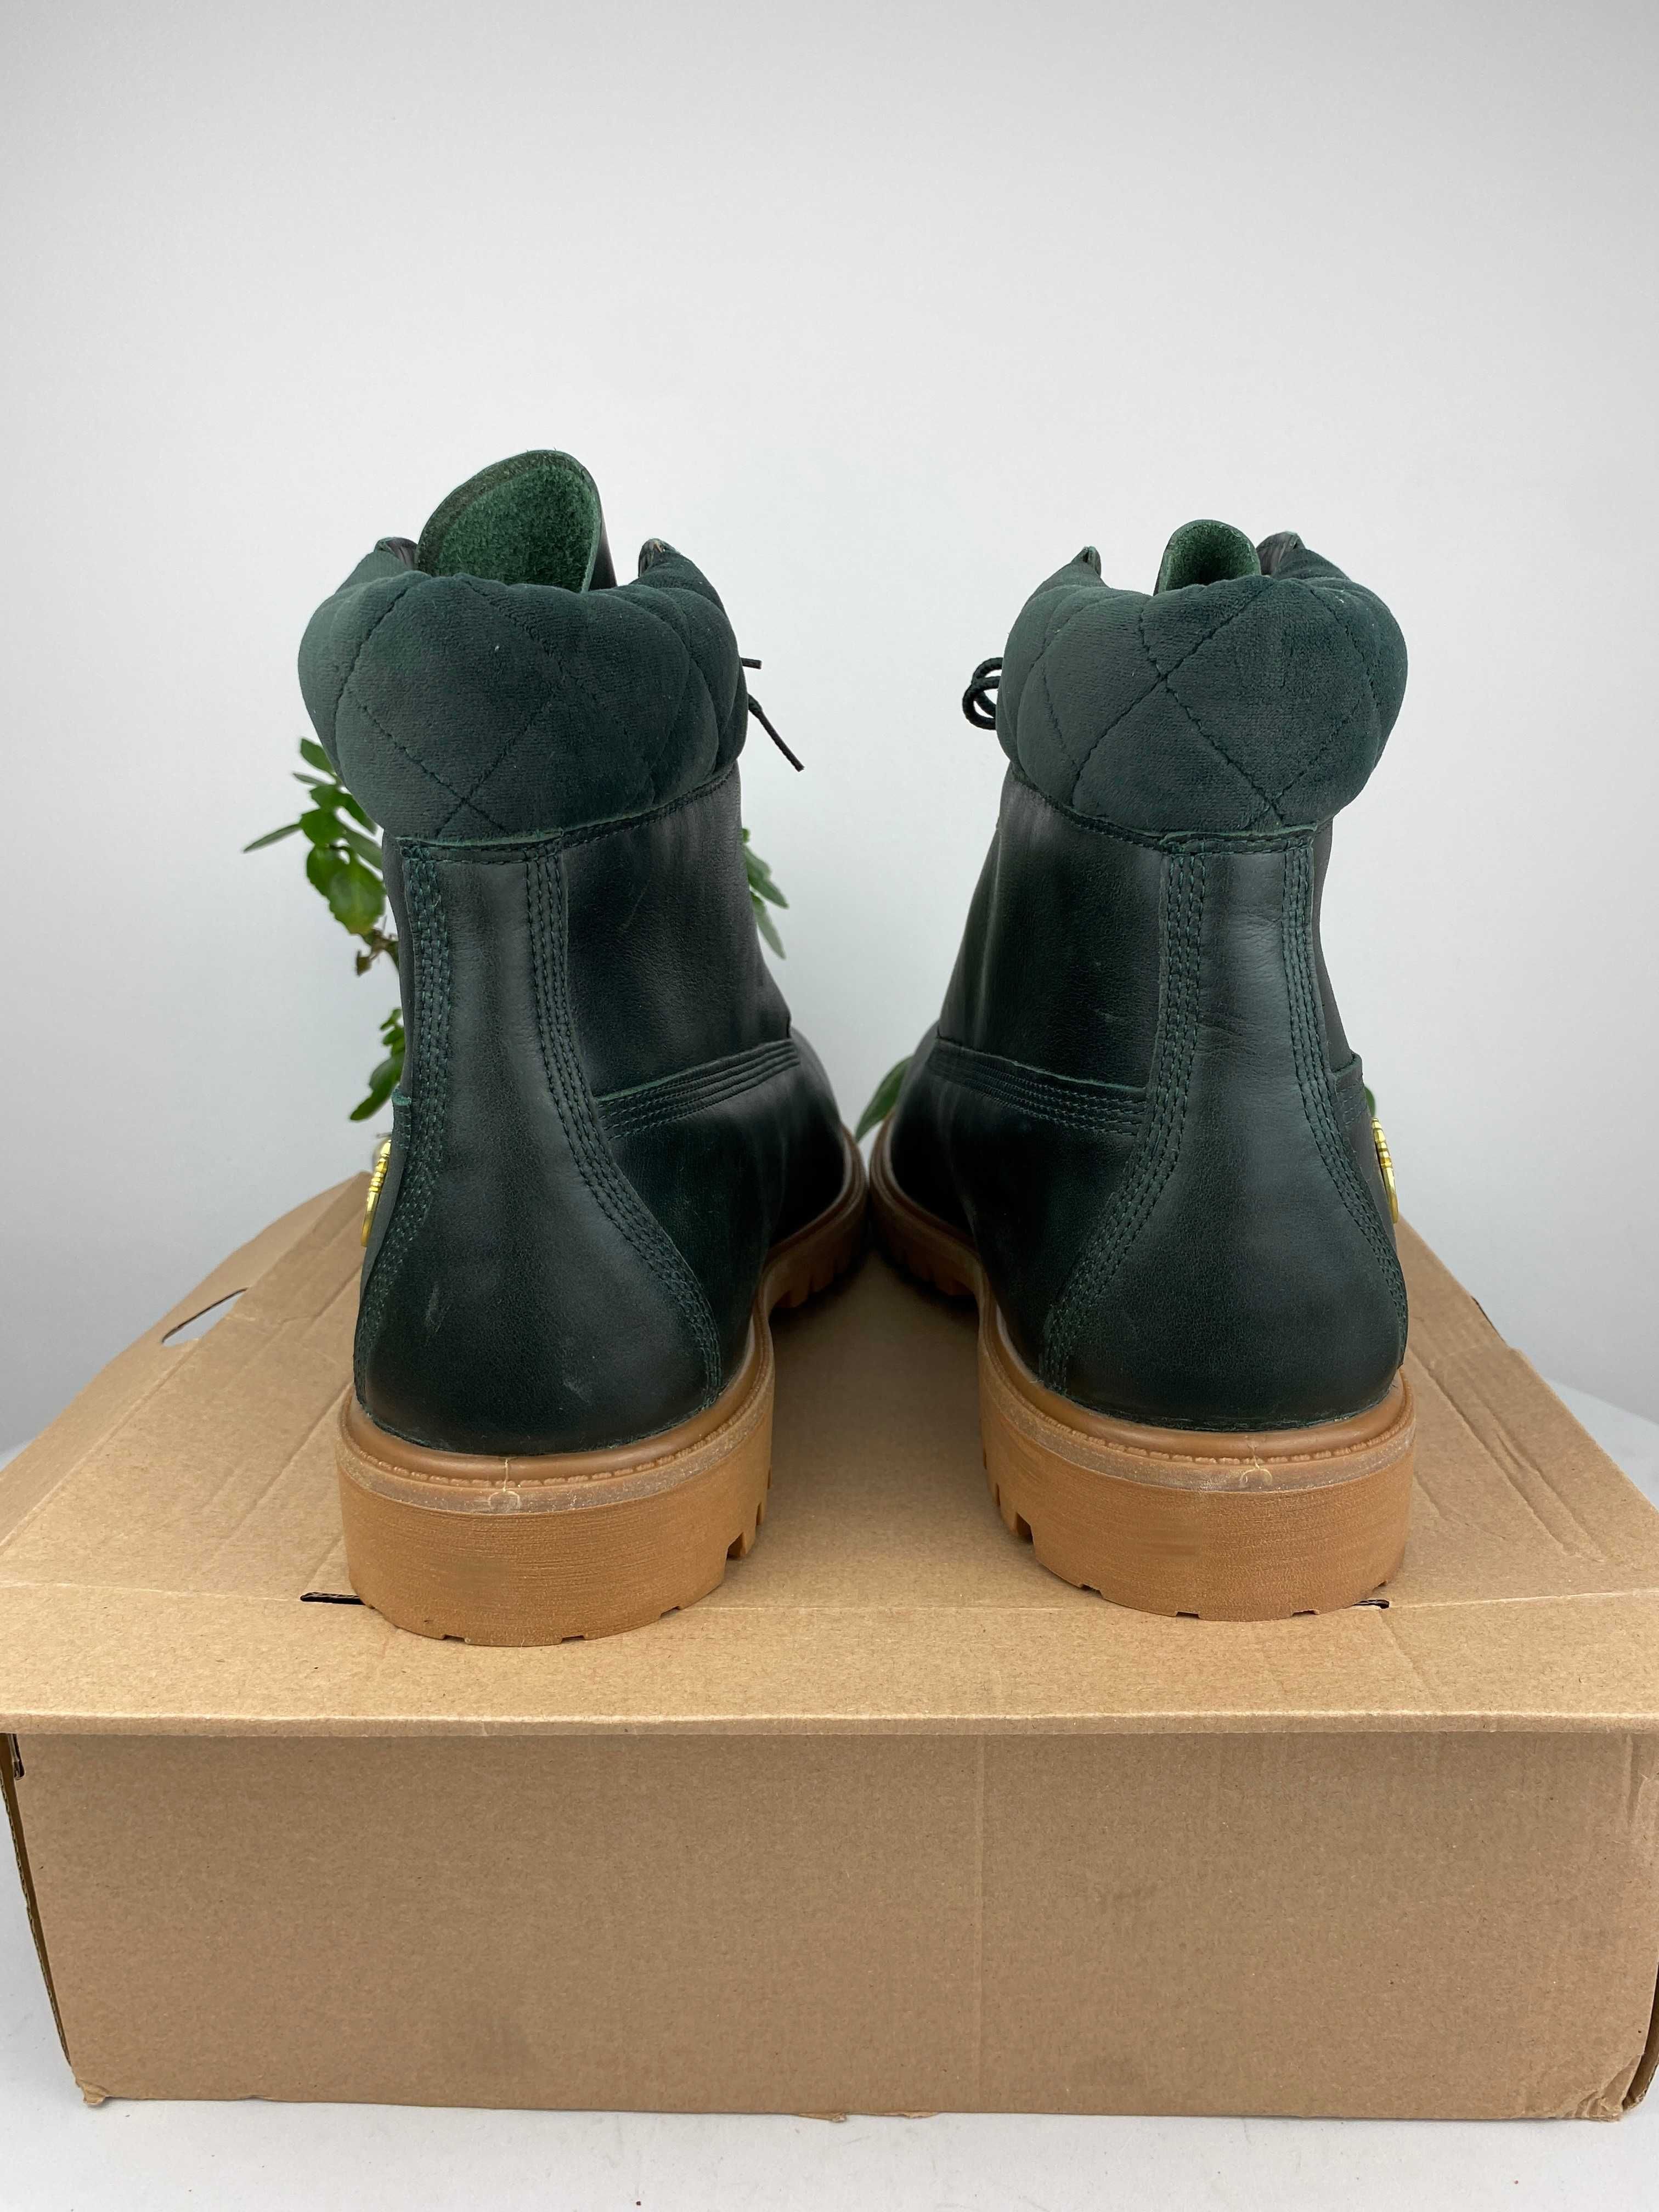 zielone brązowe buty botki trapery timberland Premium 6 Inch r47,5 n34